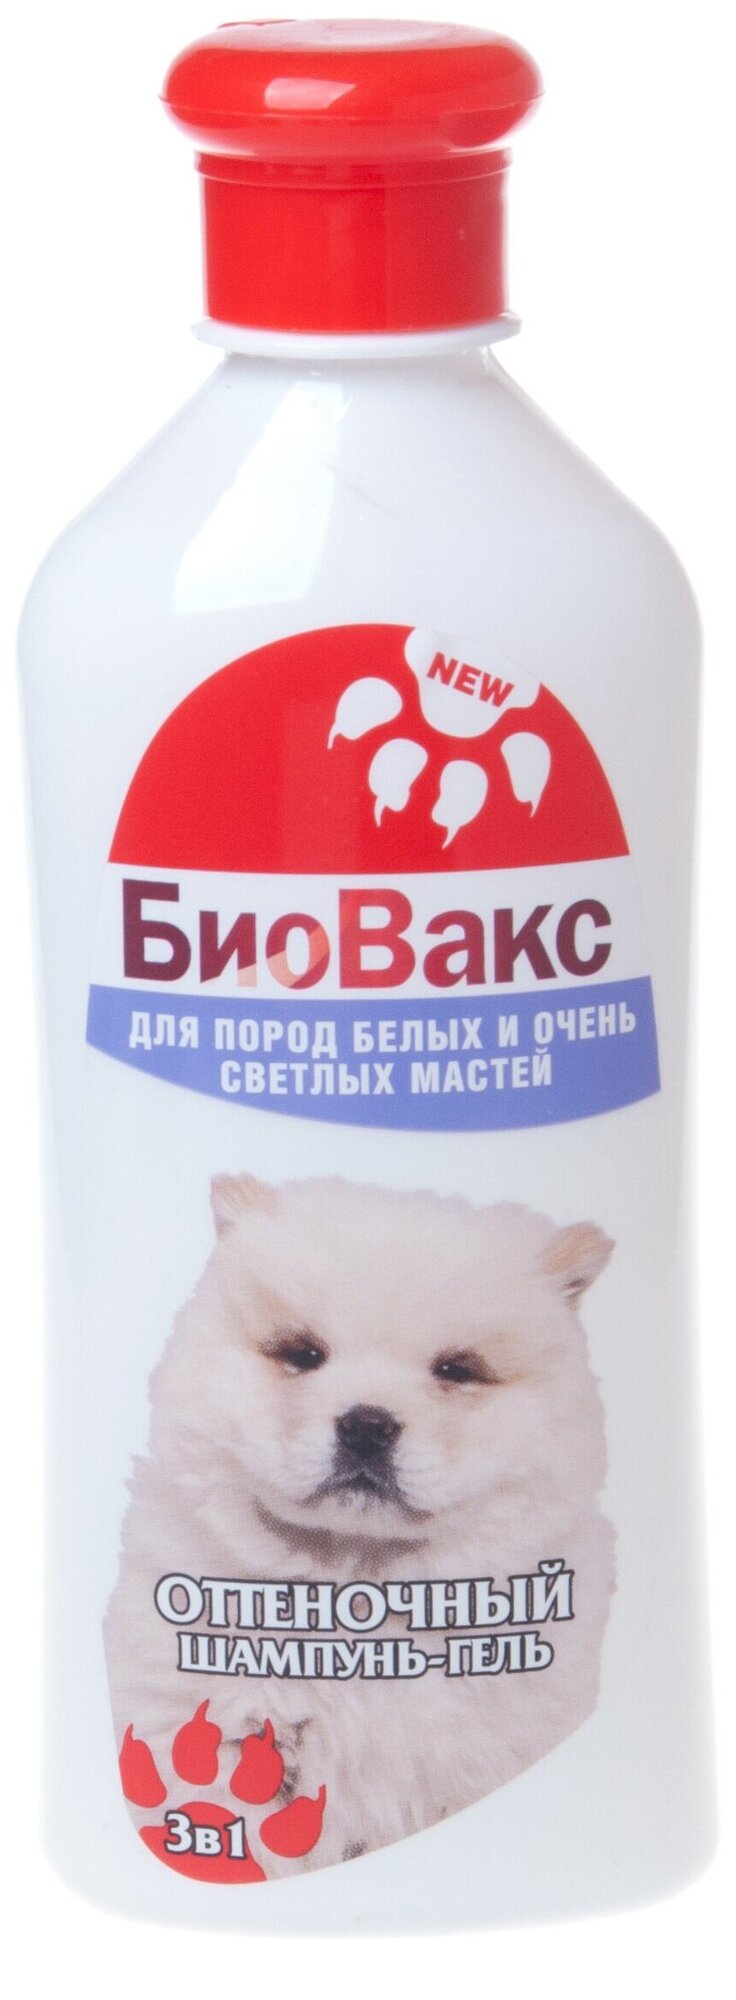 Шампунь БиоВакс для собак оттеночный белый